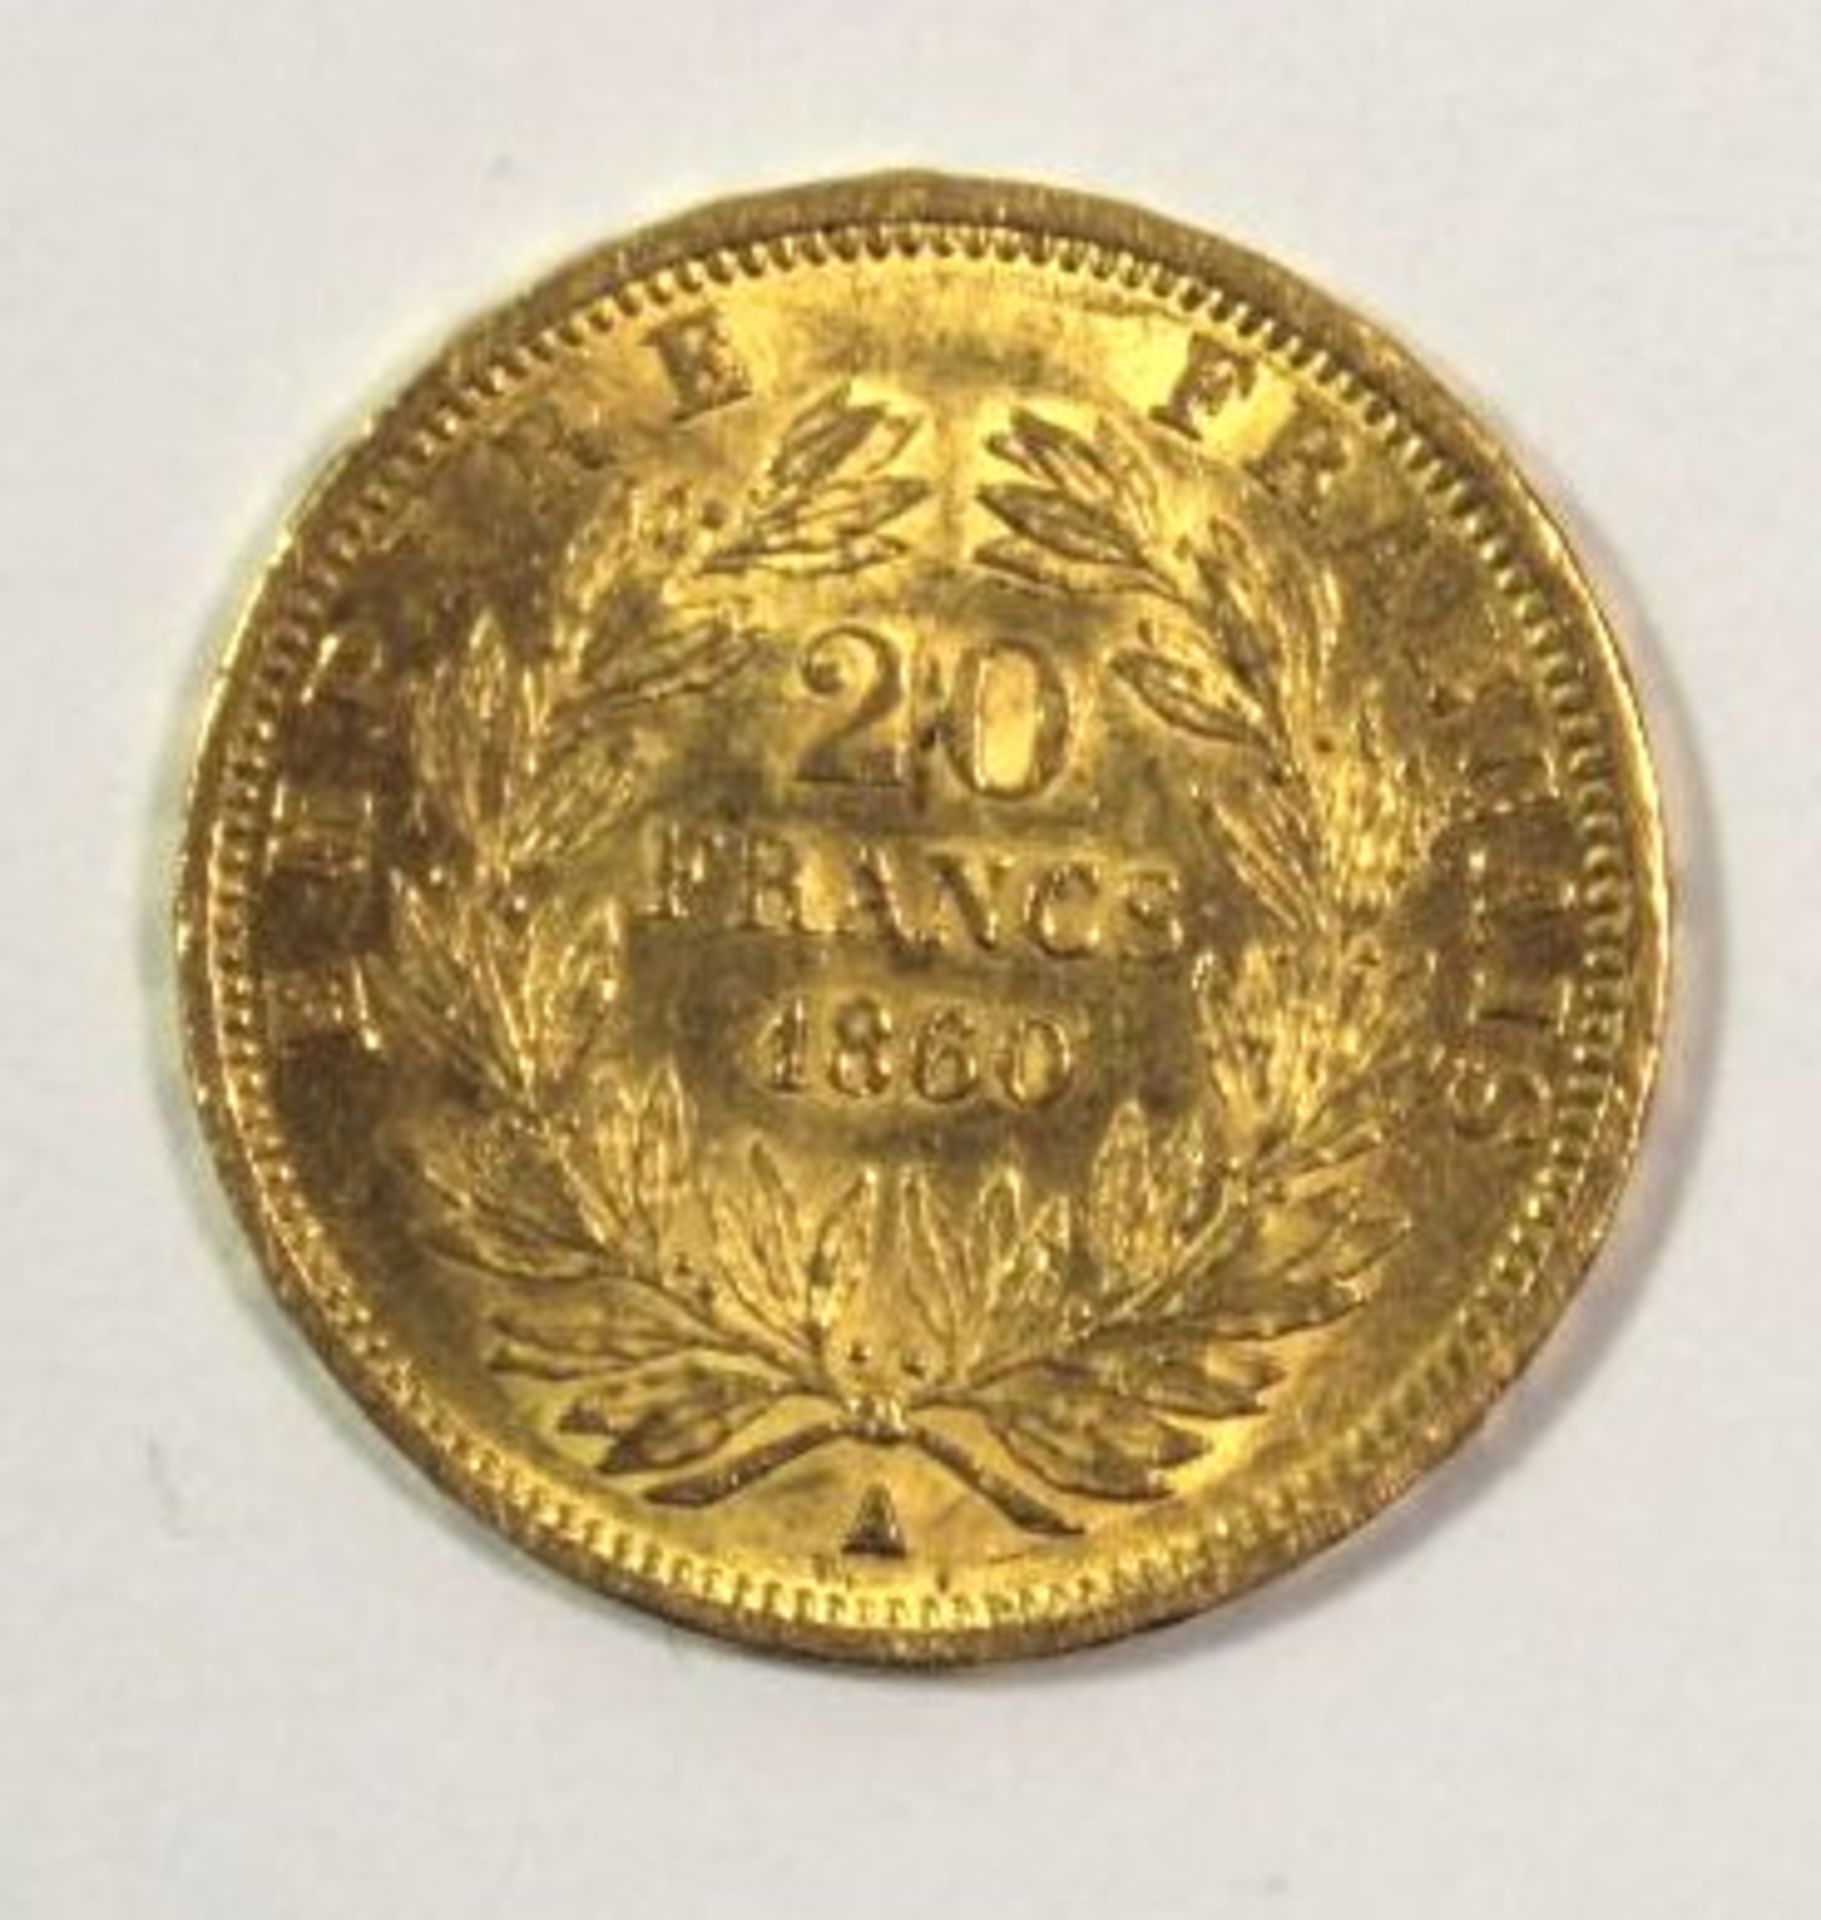 Frankreich - 20 Francs Napoleon III. A 1860, Gold, 6,4gr., D-2,1cm. - Bild 2 aus 2